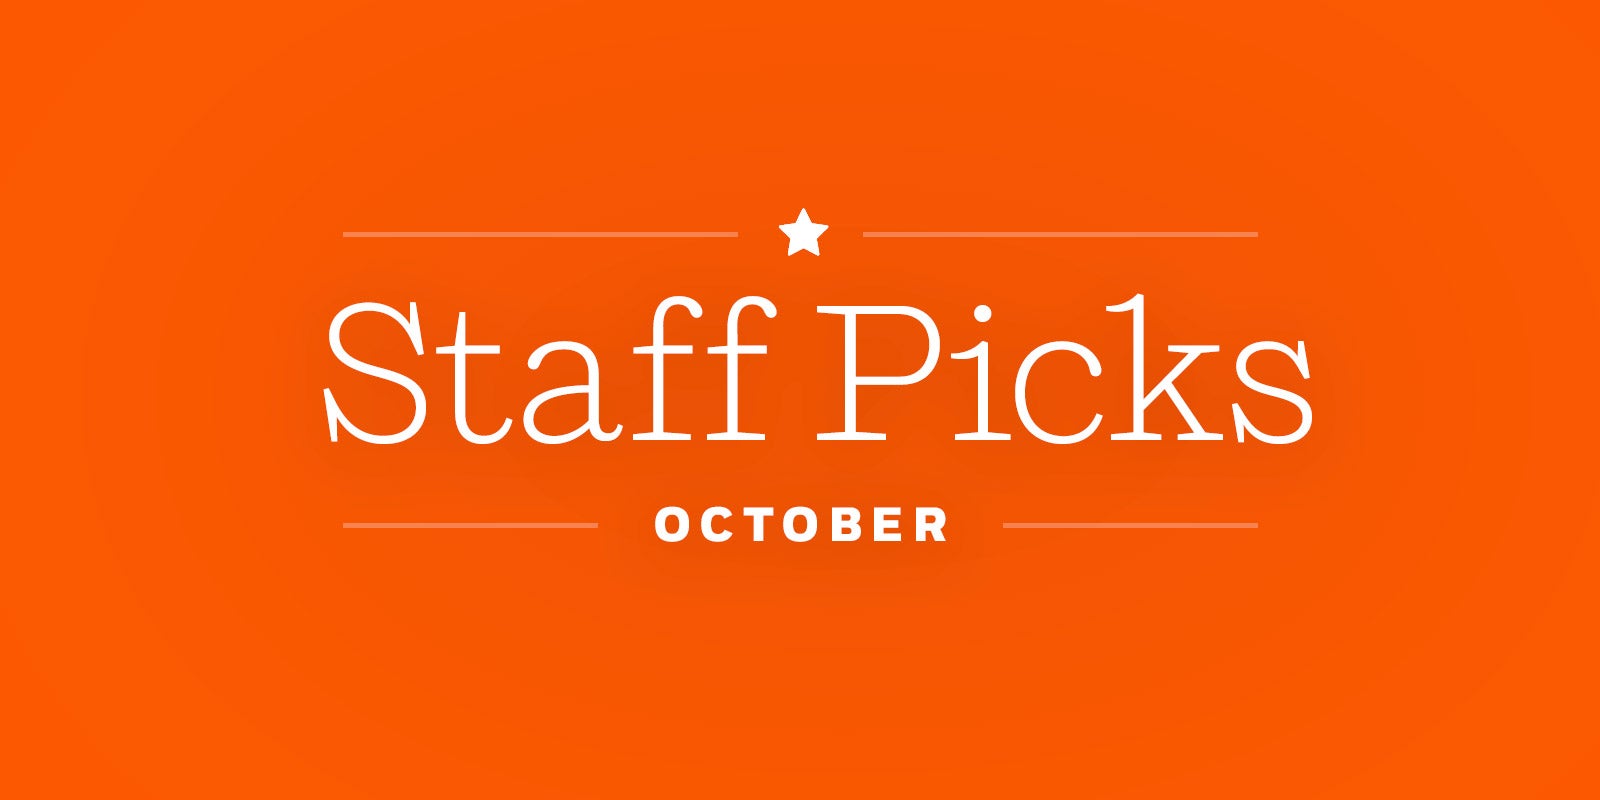 *October Staff Picks*